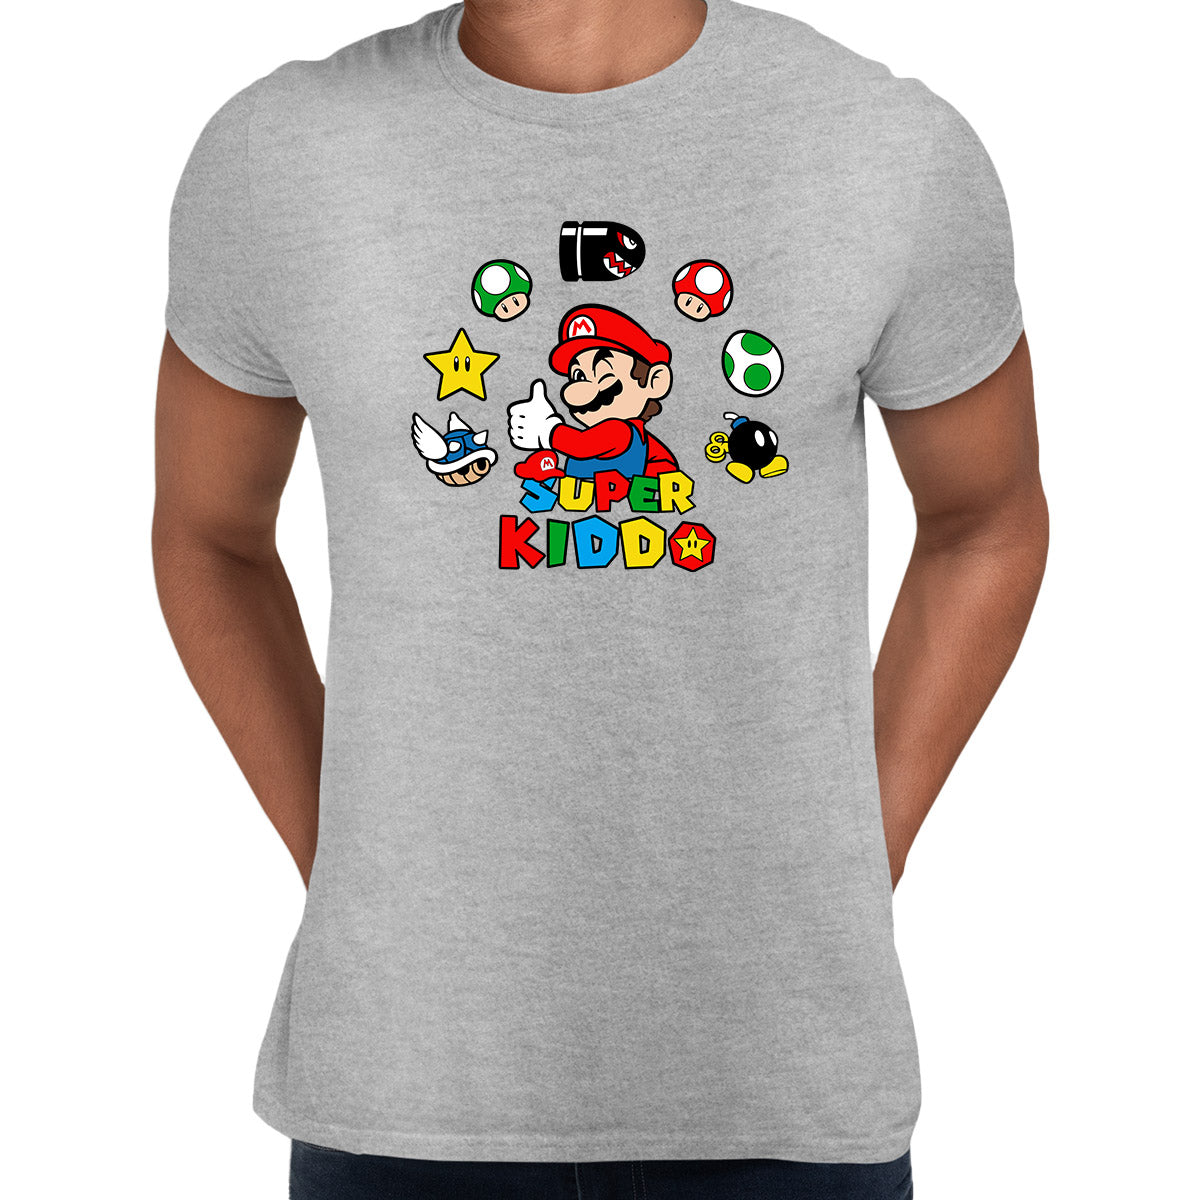 Super Kiddo Grey T-shirt Mario Birthday